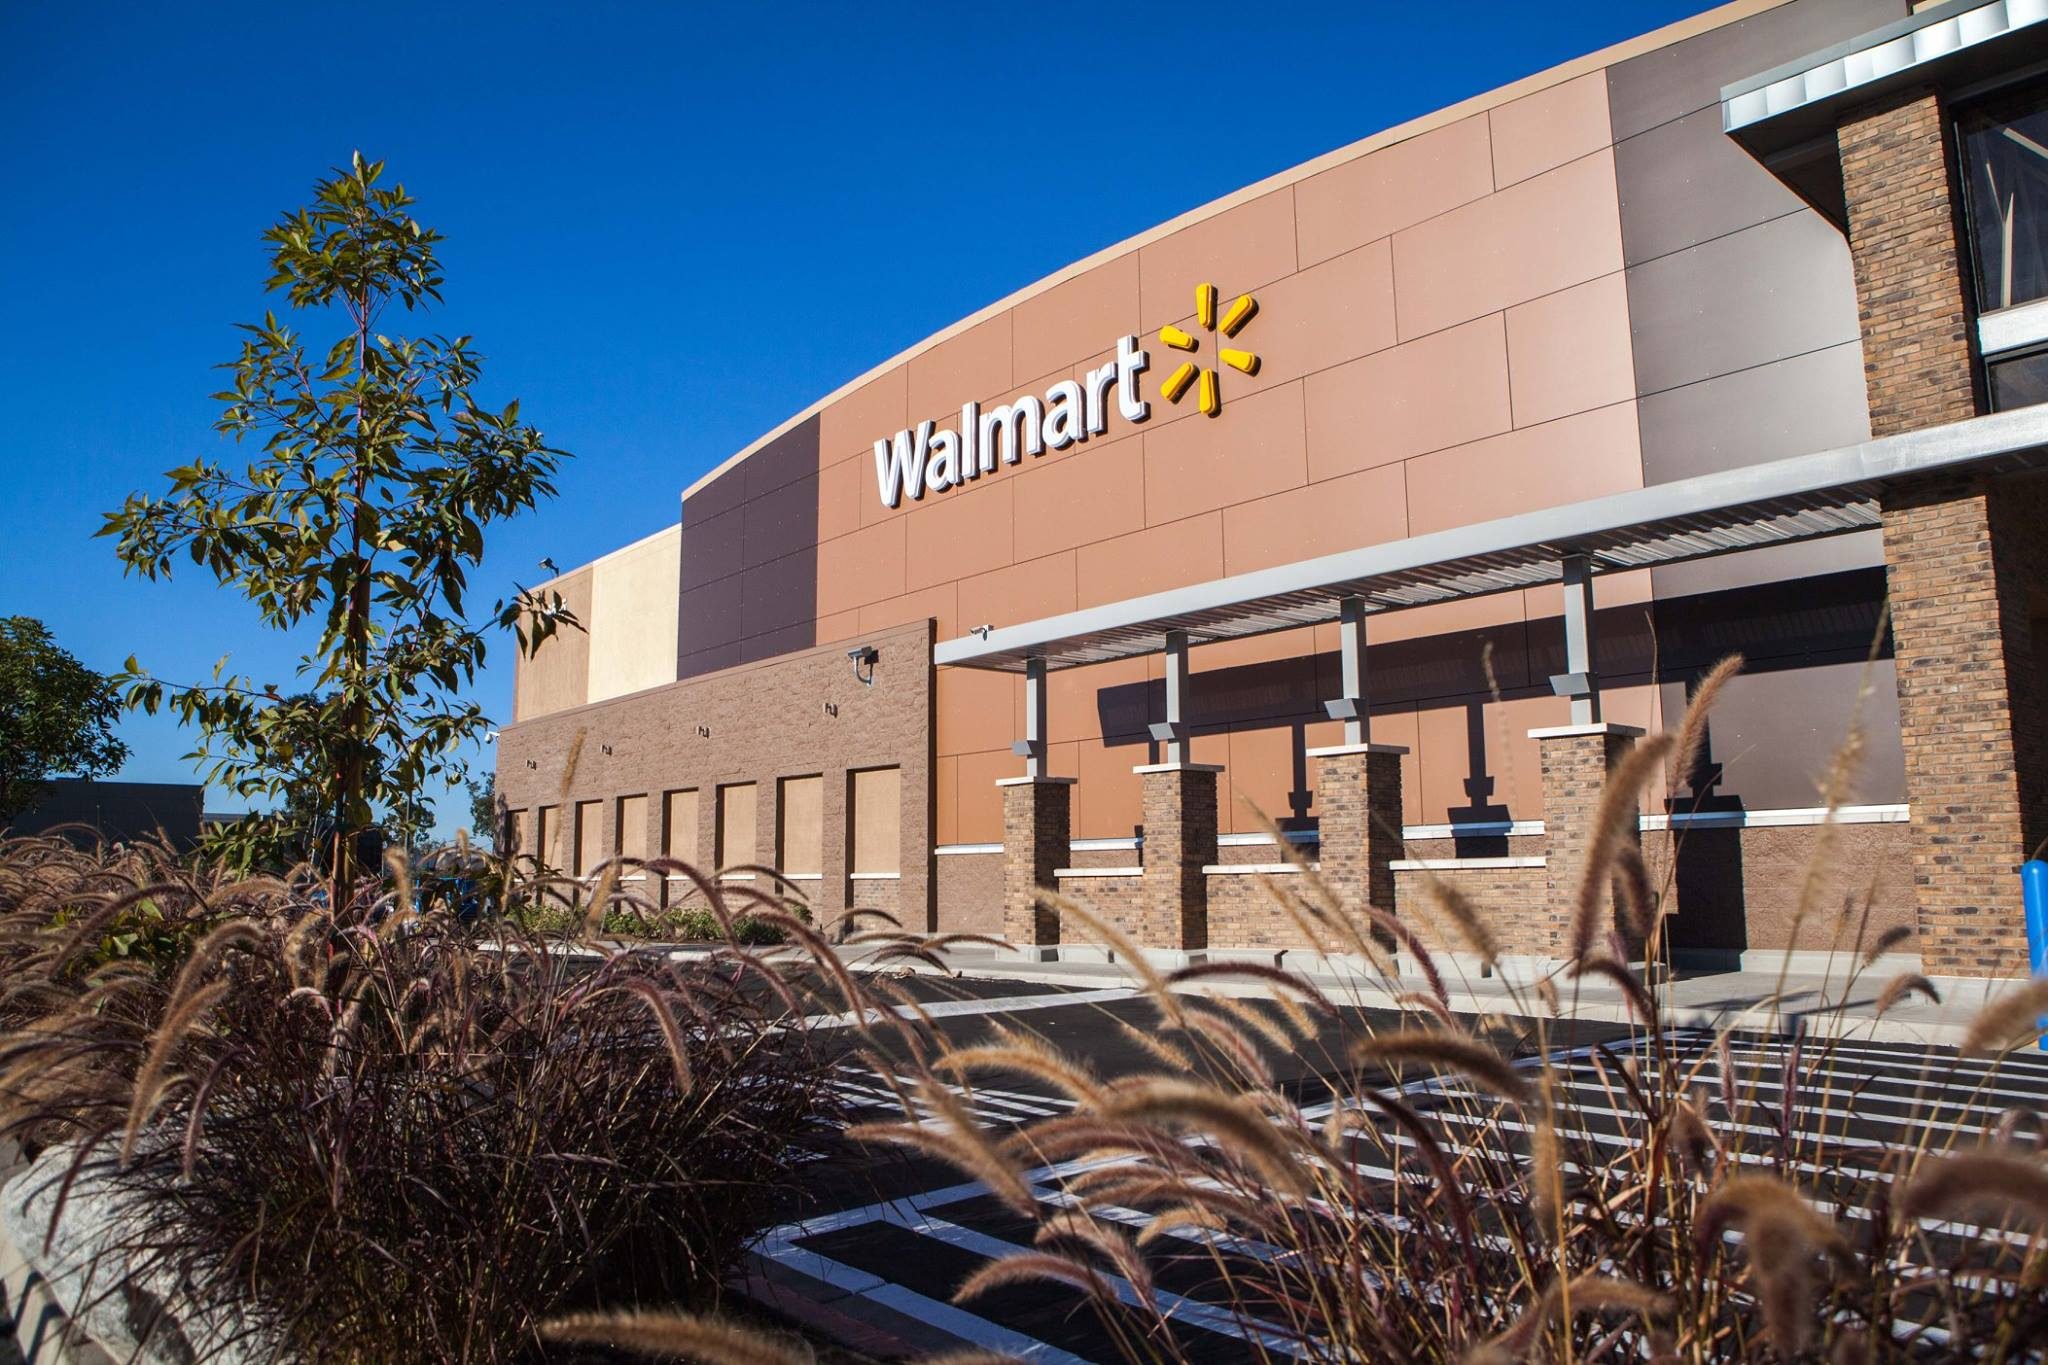 Walmart India's losses widens in FY20 despite 20% rise in revenue